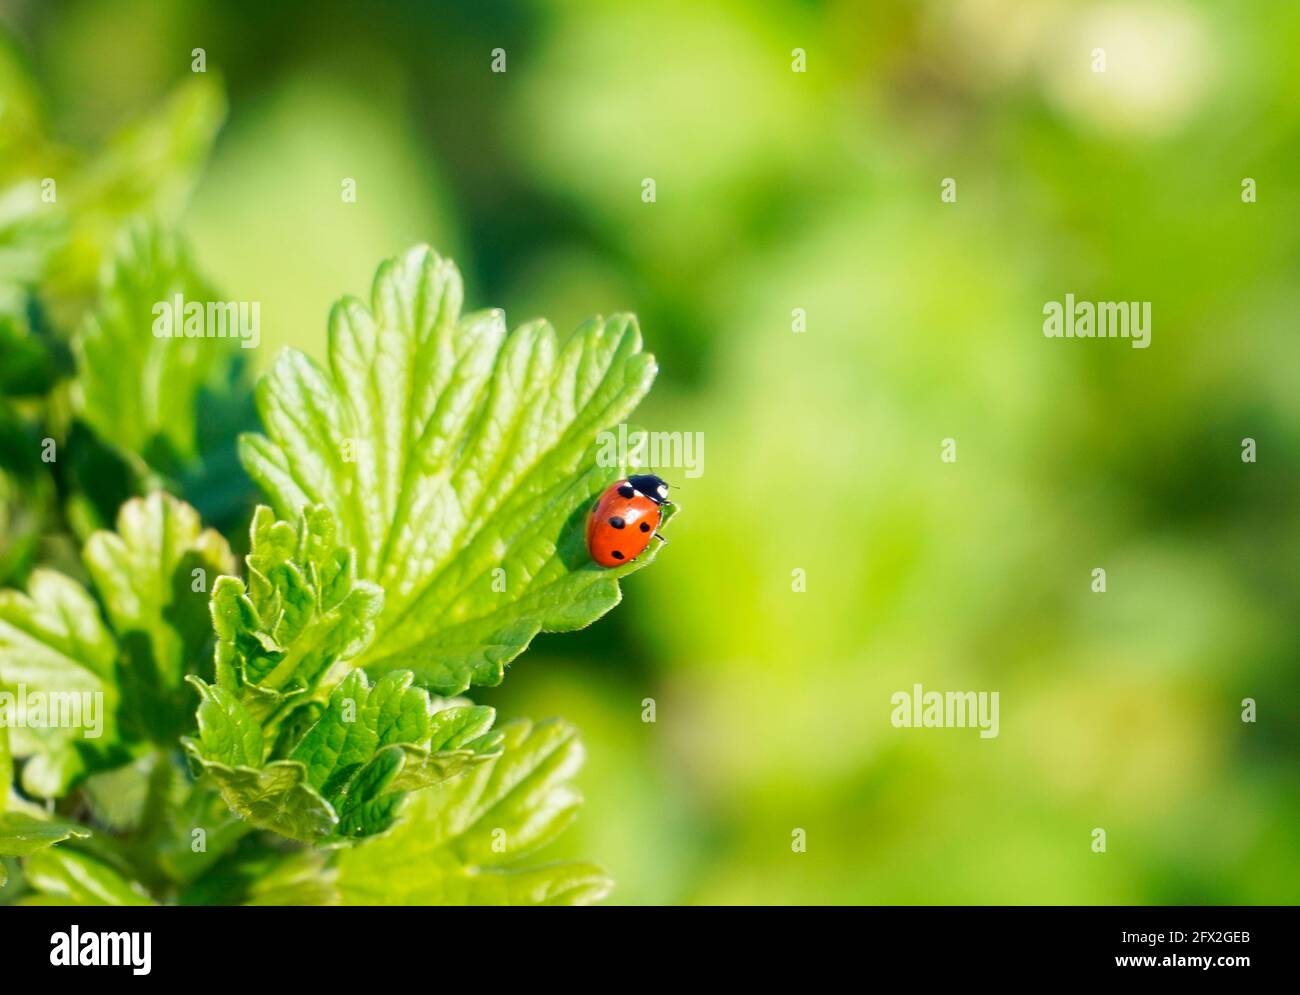 Kleiner roter Marienkäfer auf einem grünen Johannisbeerblatt. Grüner natürlicher Hintergrund. Nahaufnahme eines Insekts. Roter Käfer mit Punkten. Stockfoto